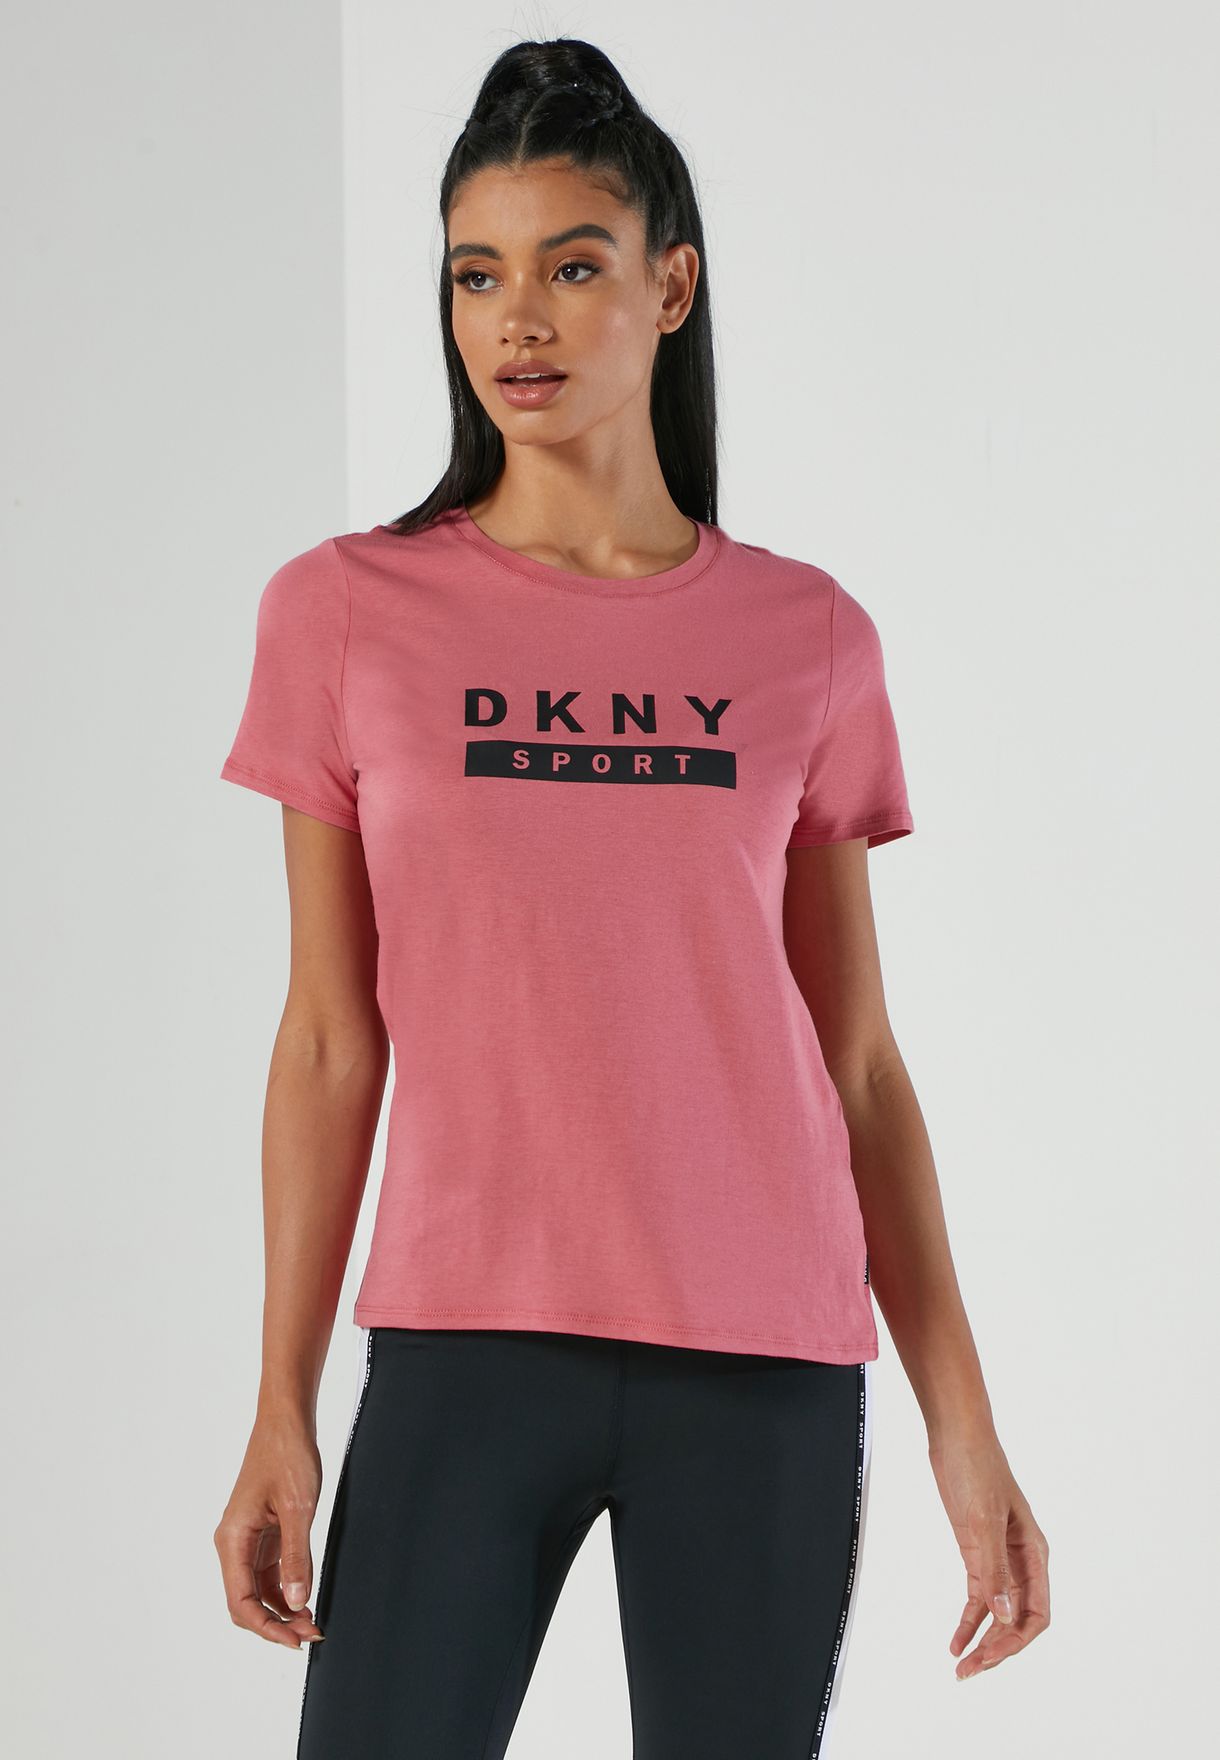 DKNY Sport Rosa Manica Corta T-shirt da donna S 